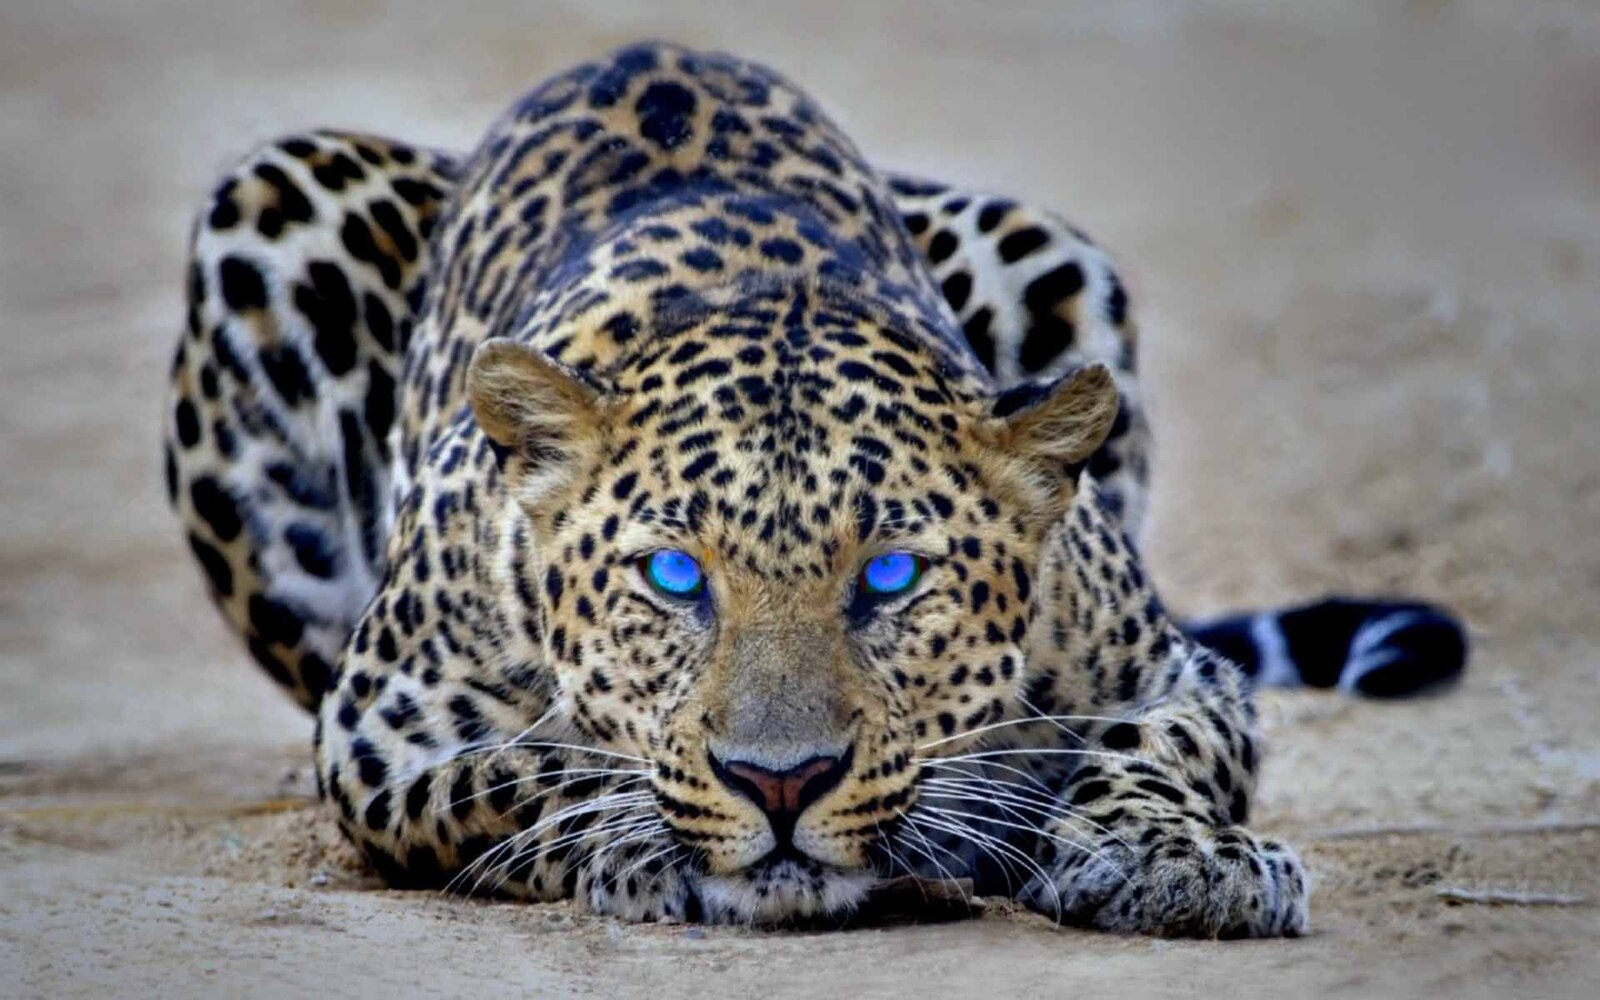 صورة مميزة لحيوان الفهد له عيون زرقاء